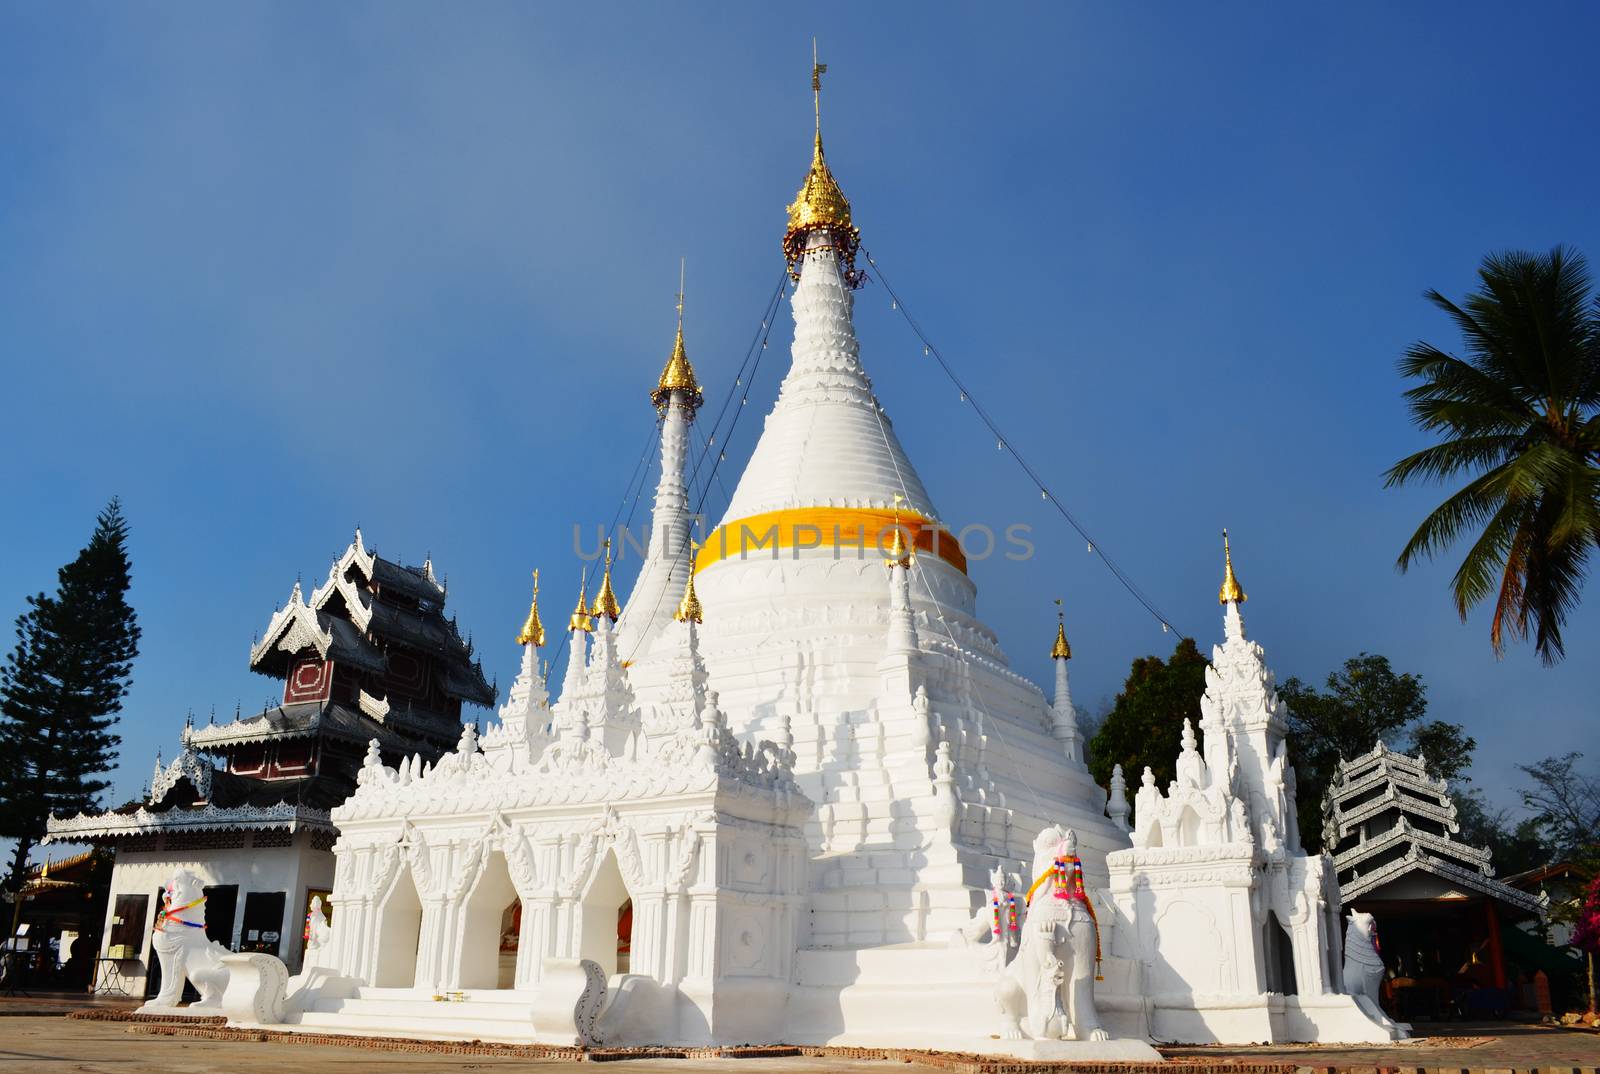 Phra Tad Doi Kong Mu,Pagoda(Chedi,Stupa) of Tai Yai's Buddhist in Thailand.